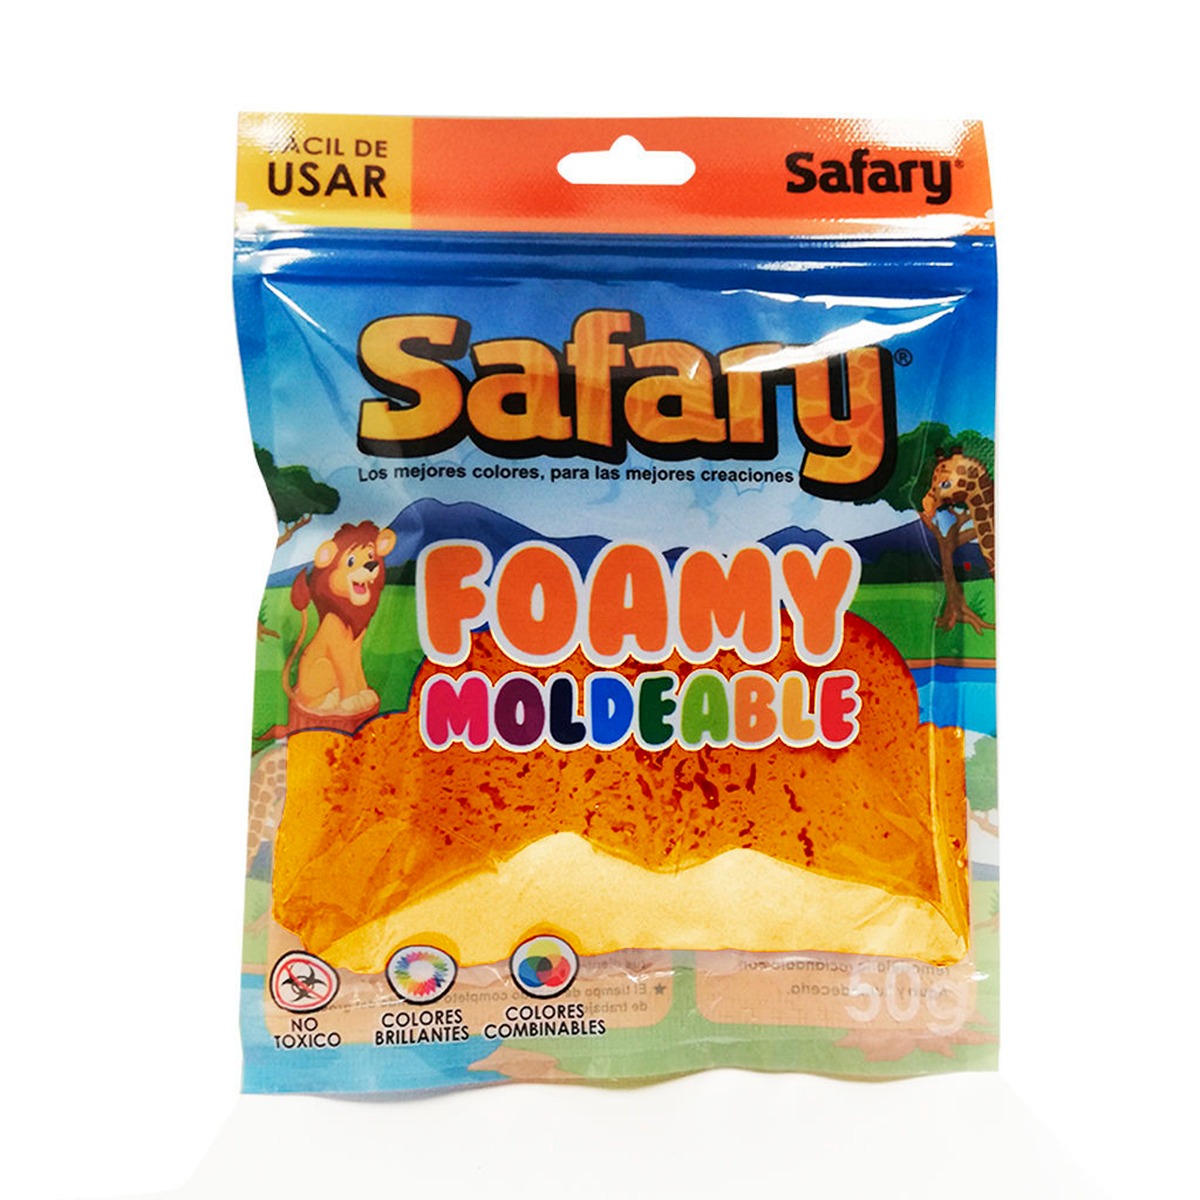 Foamy Moldeable Safary 50 grs Col. Varios